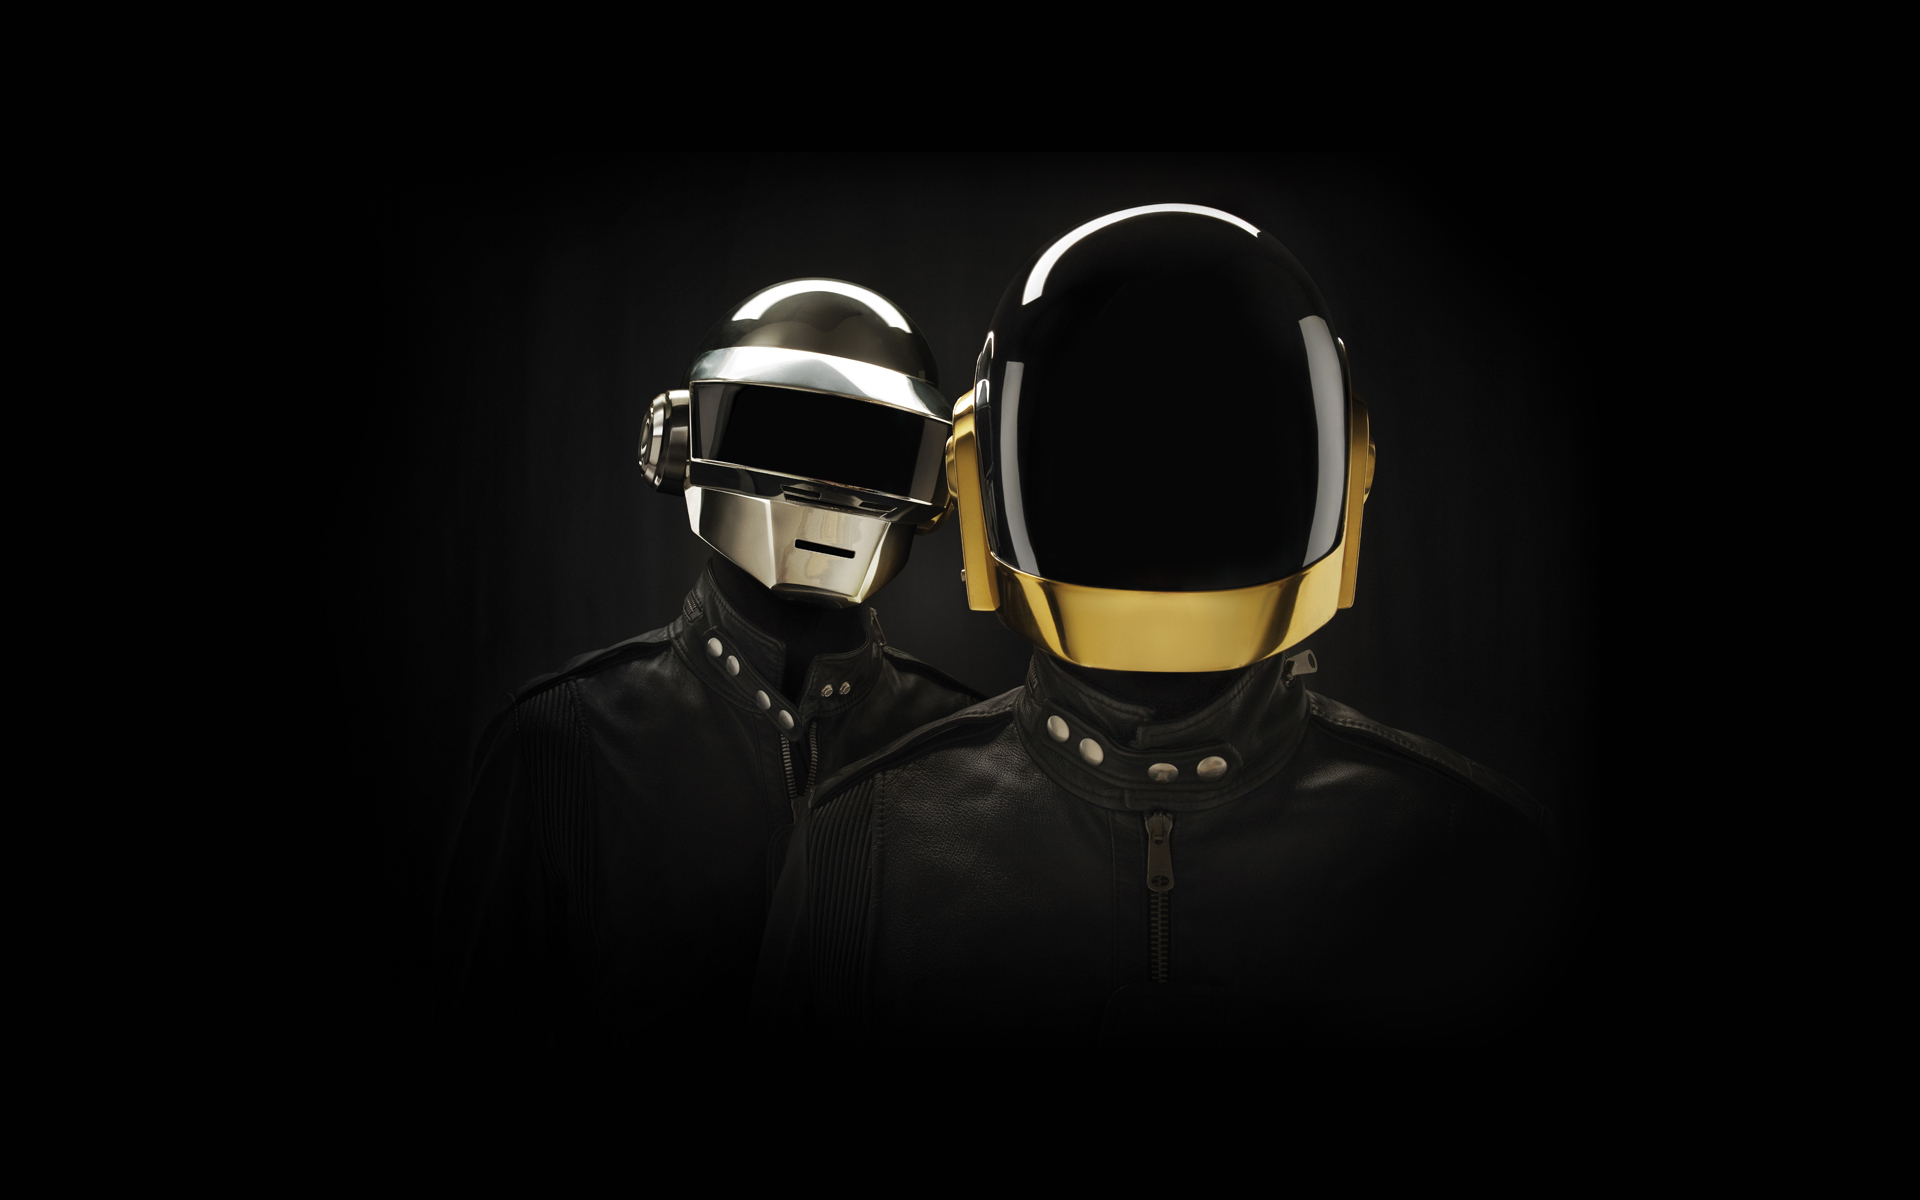 Скачать обои бесплатно Музыка, Daft Punk картинка на рабочий стол ПК